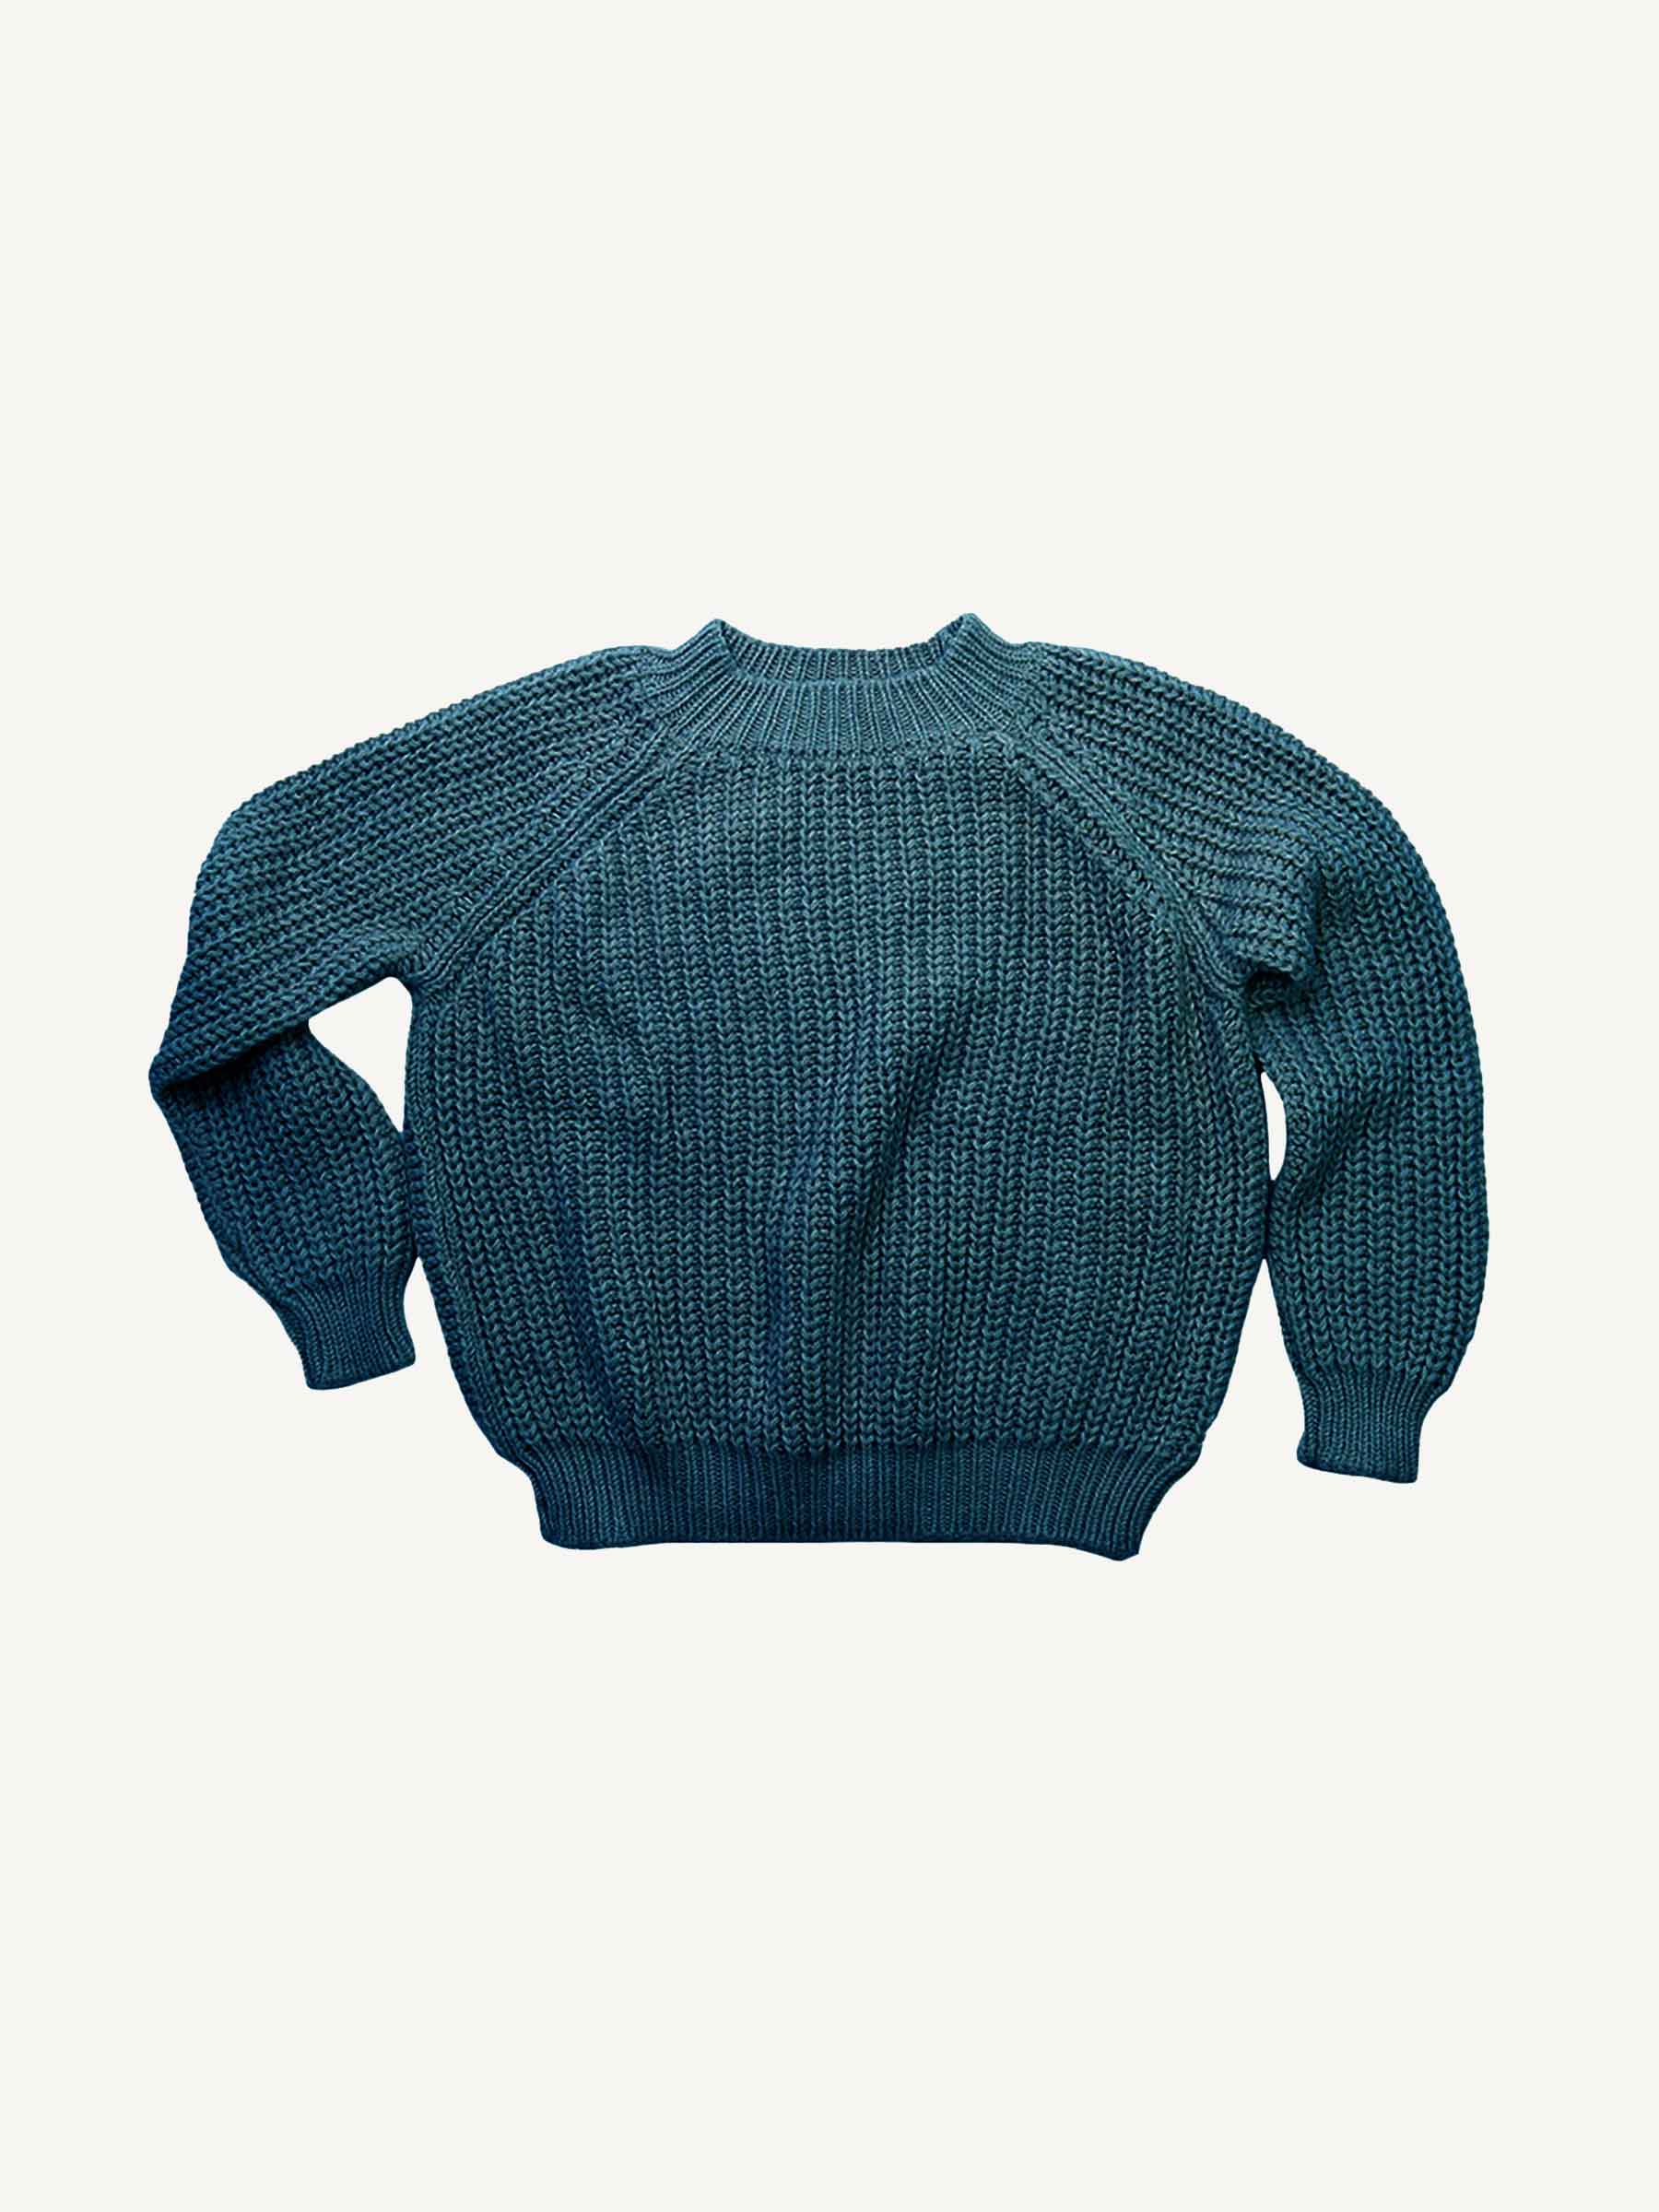 Merino Wool Adult Fishline Sweater - Nui Organics